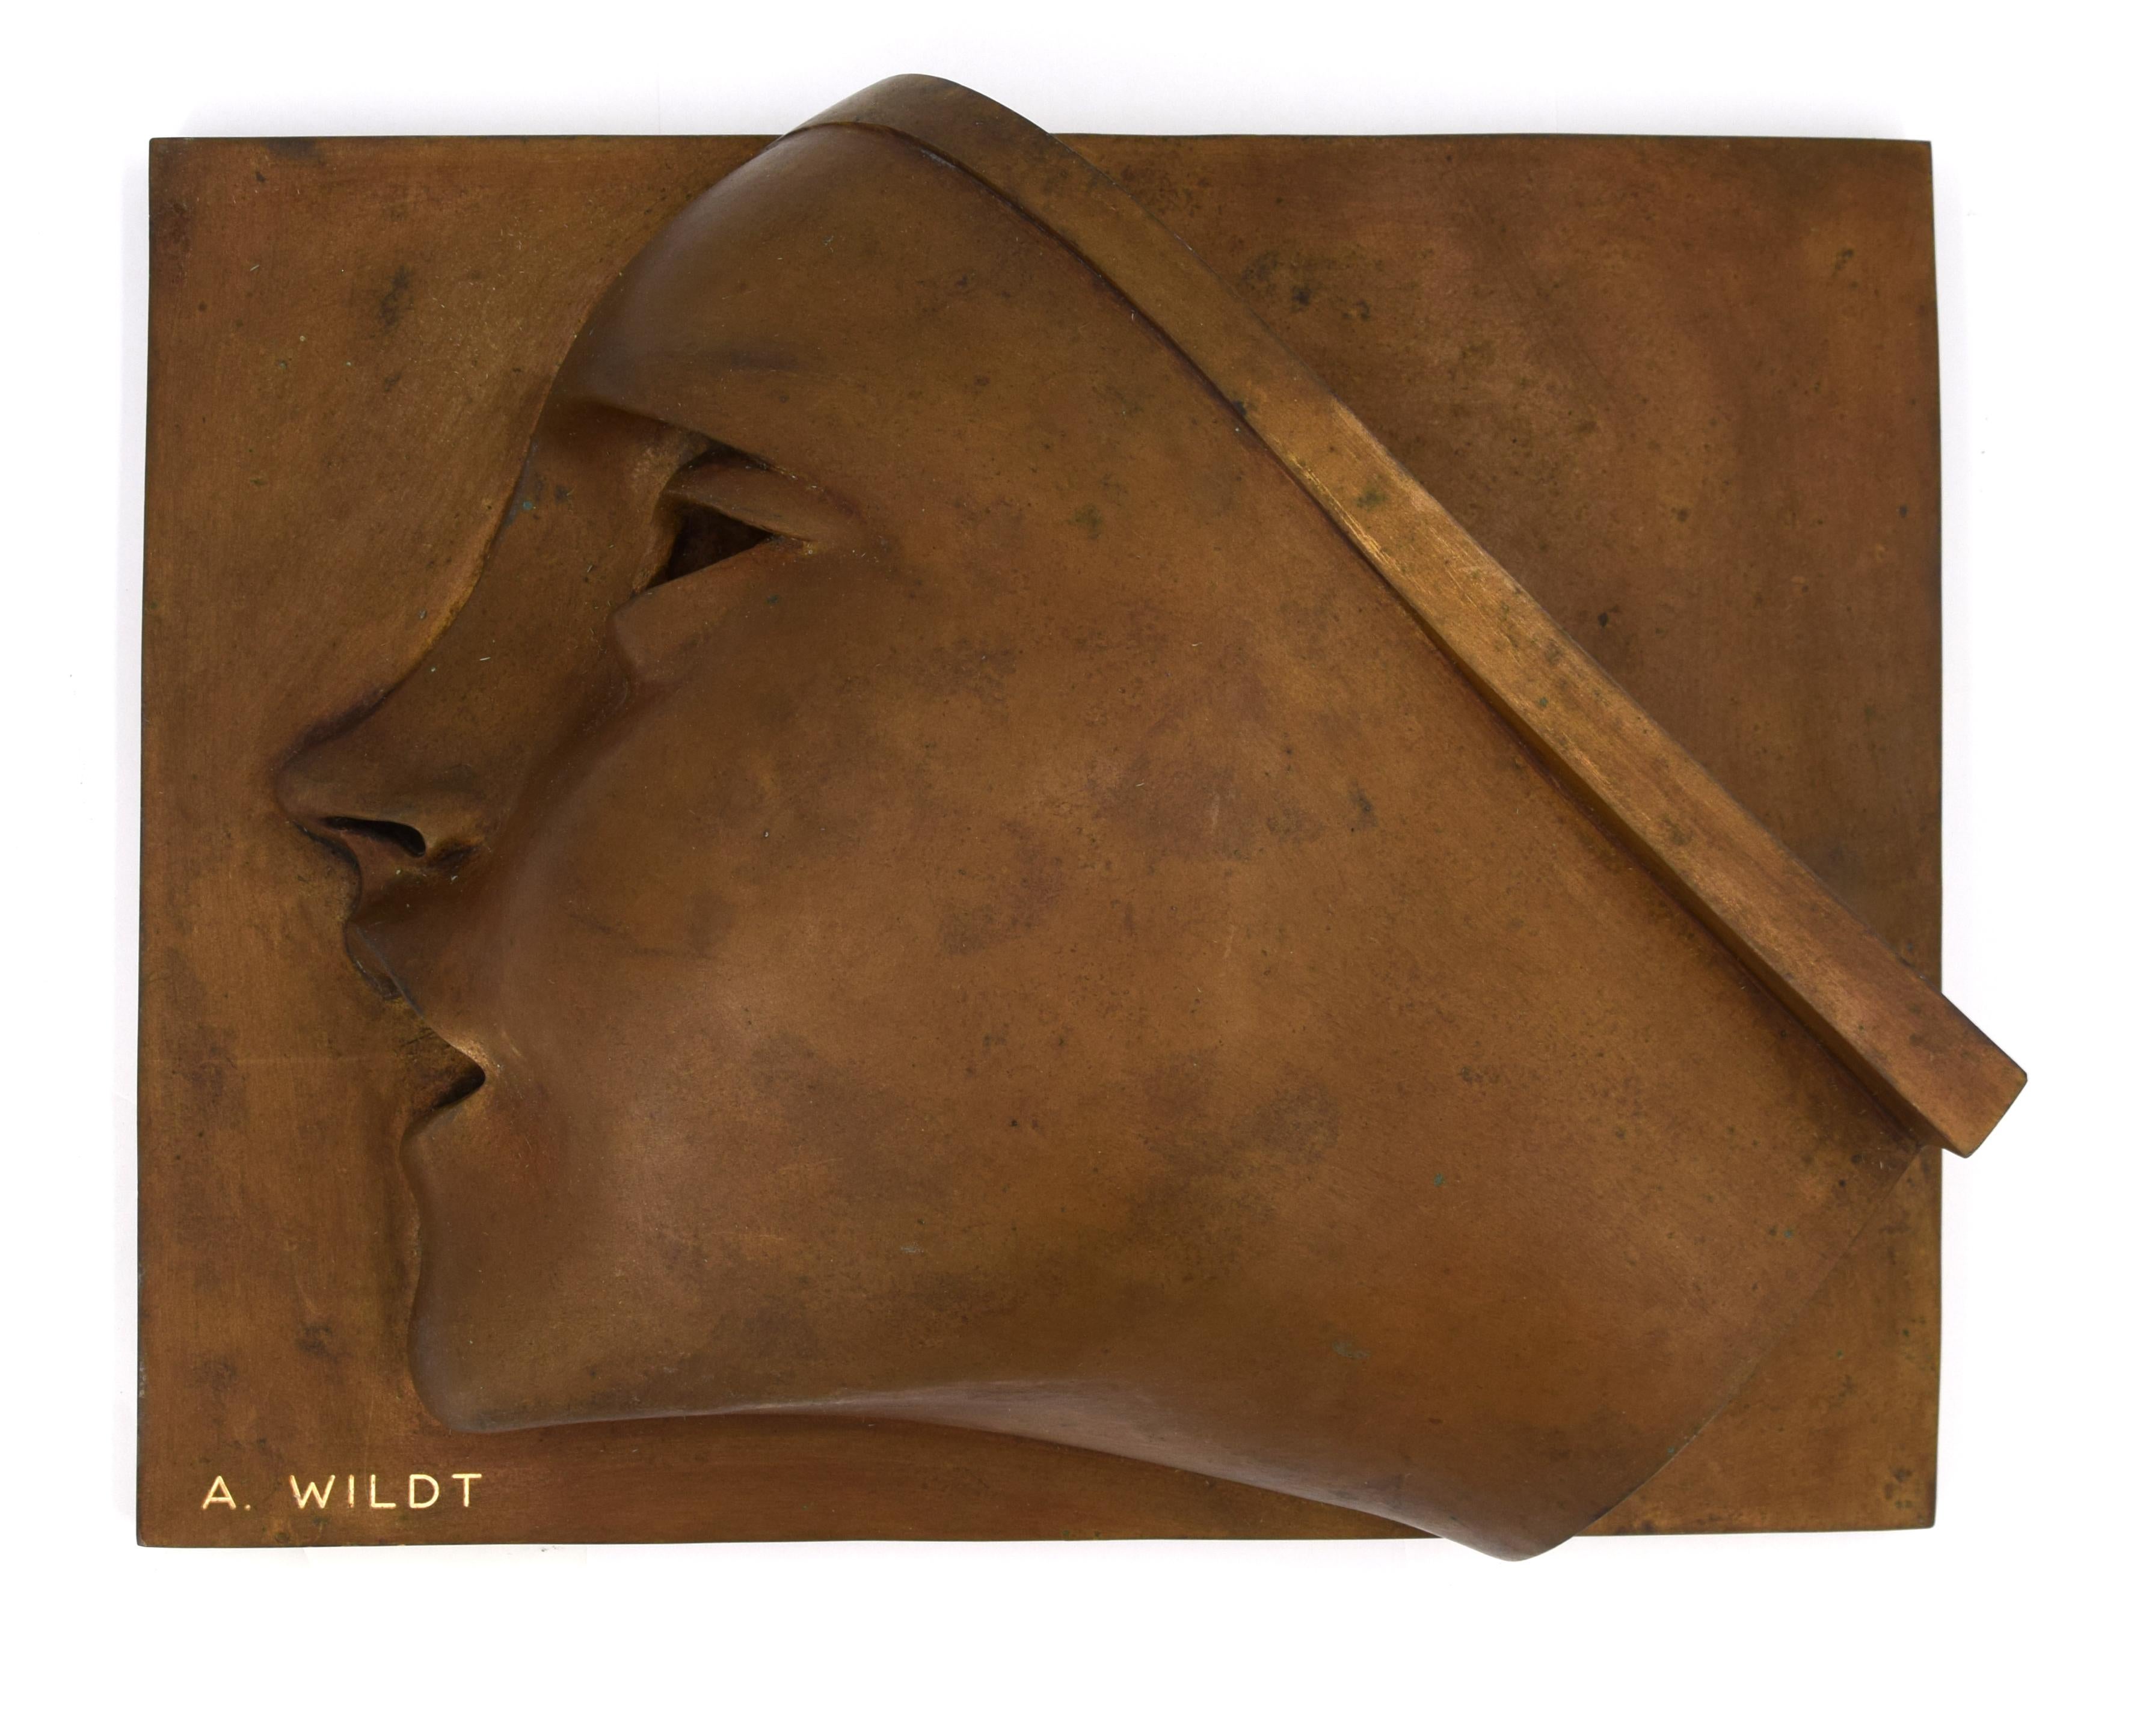 Adolfo Wildt Figurative Sculpture – Victor Victory - Bronzeskulptur nach A. Wildt - 1990